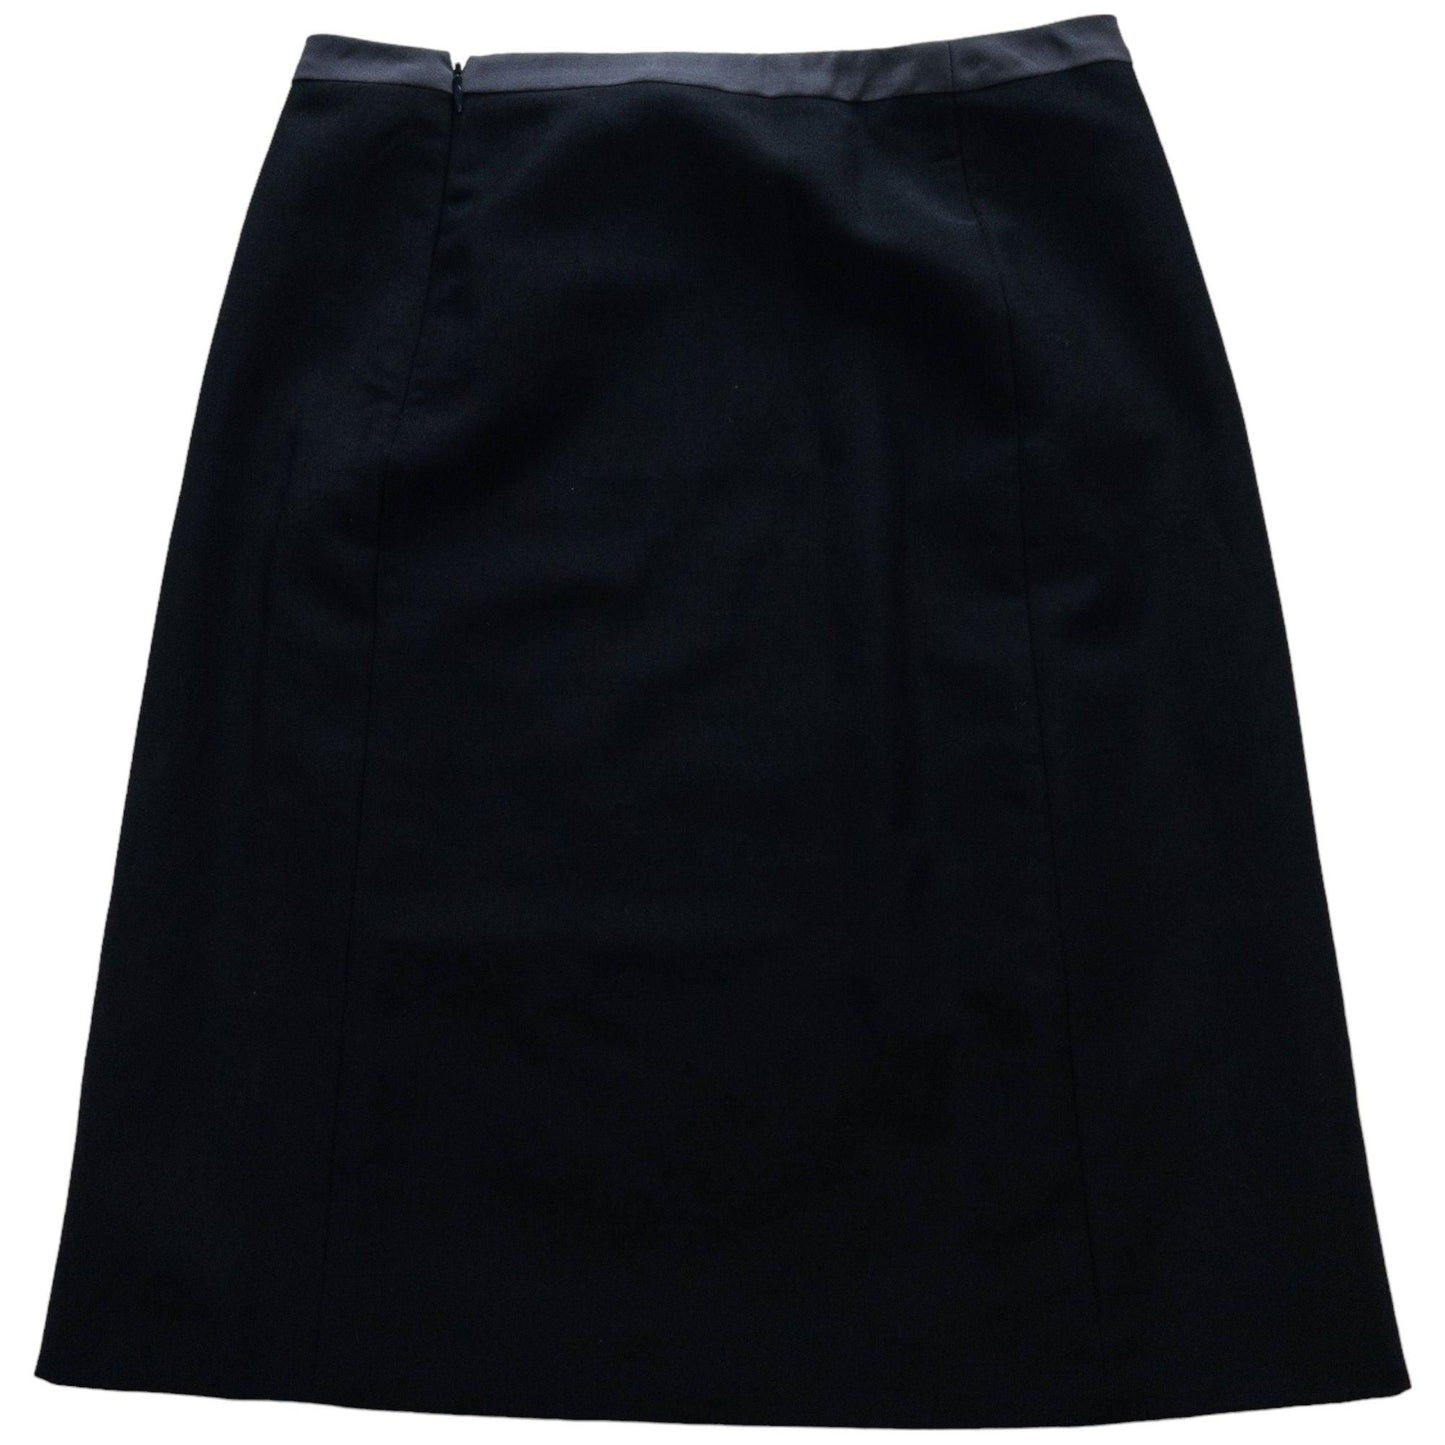 Vintage Prada Mohair Skirt Size W28